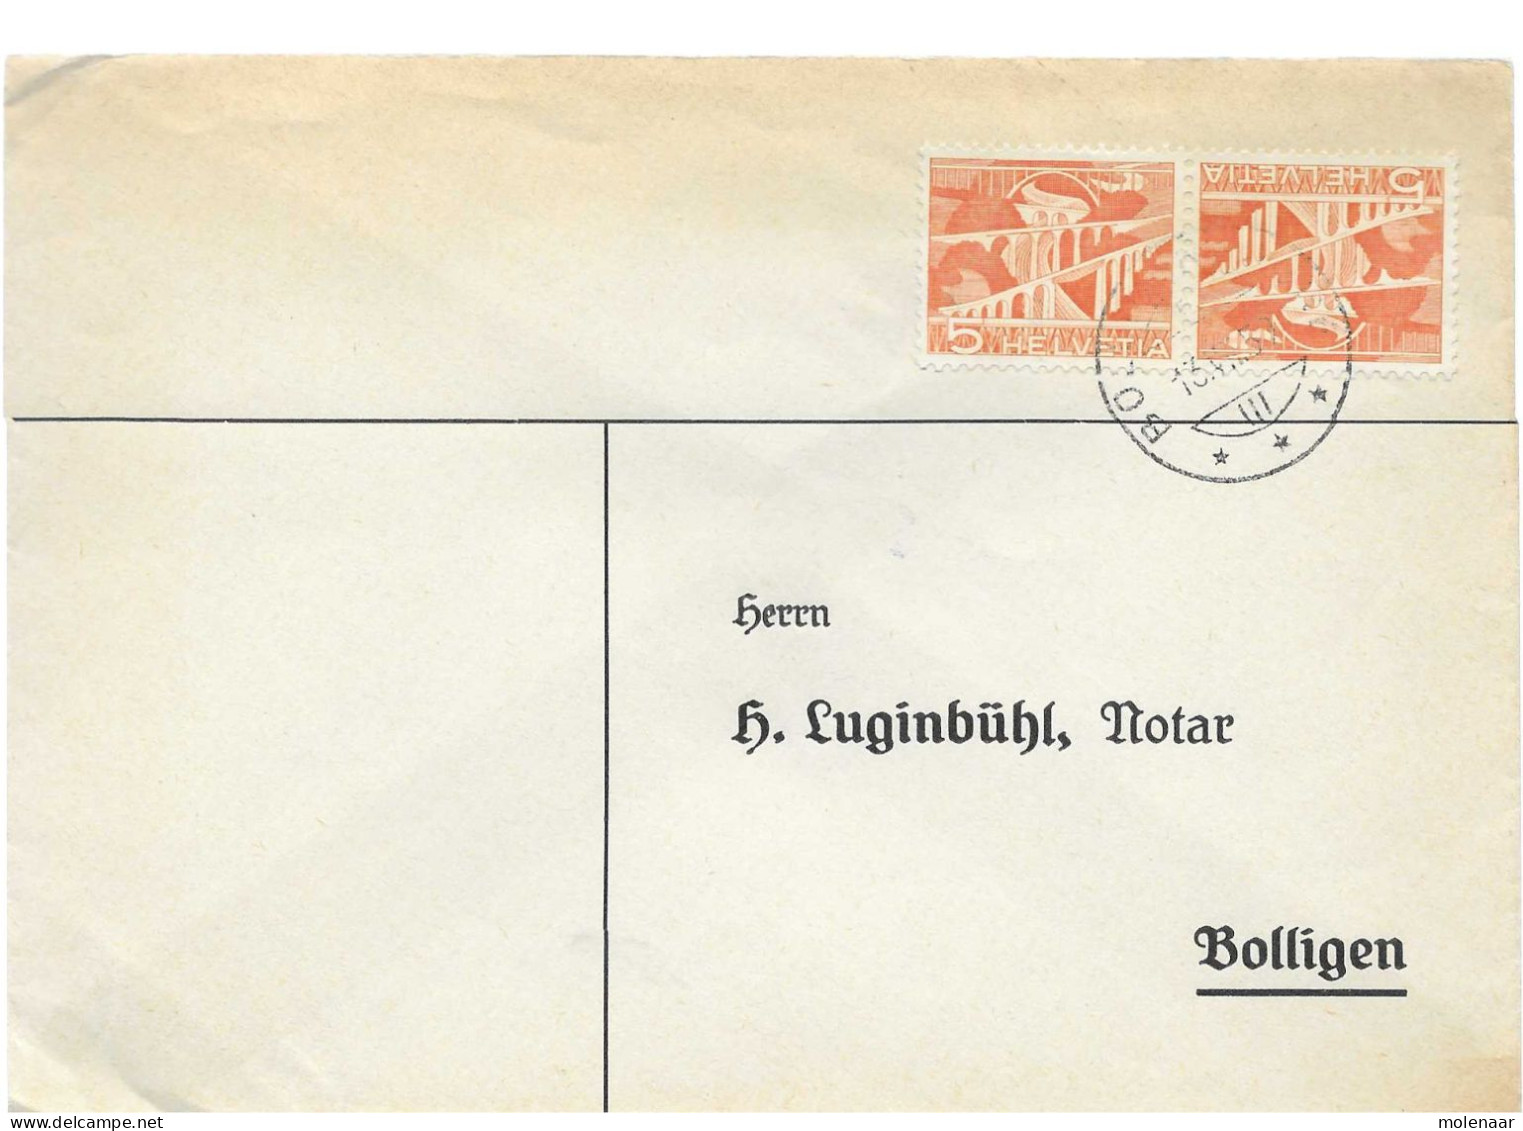 Postzegels > Europa > Zwitserland > 1940-1949 > Brief Met Tete Beche No. 524 (17644) - Lettres & Documents